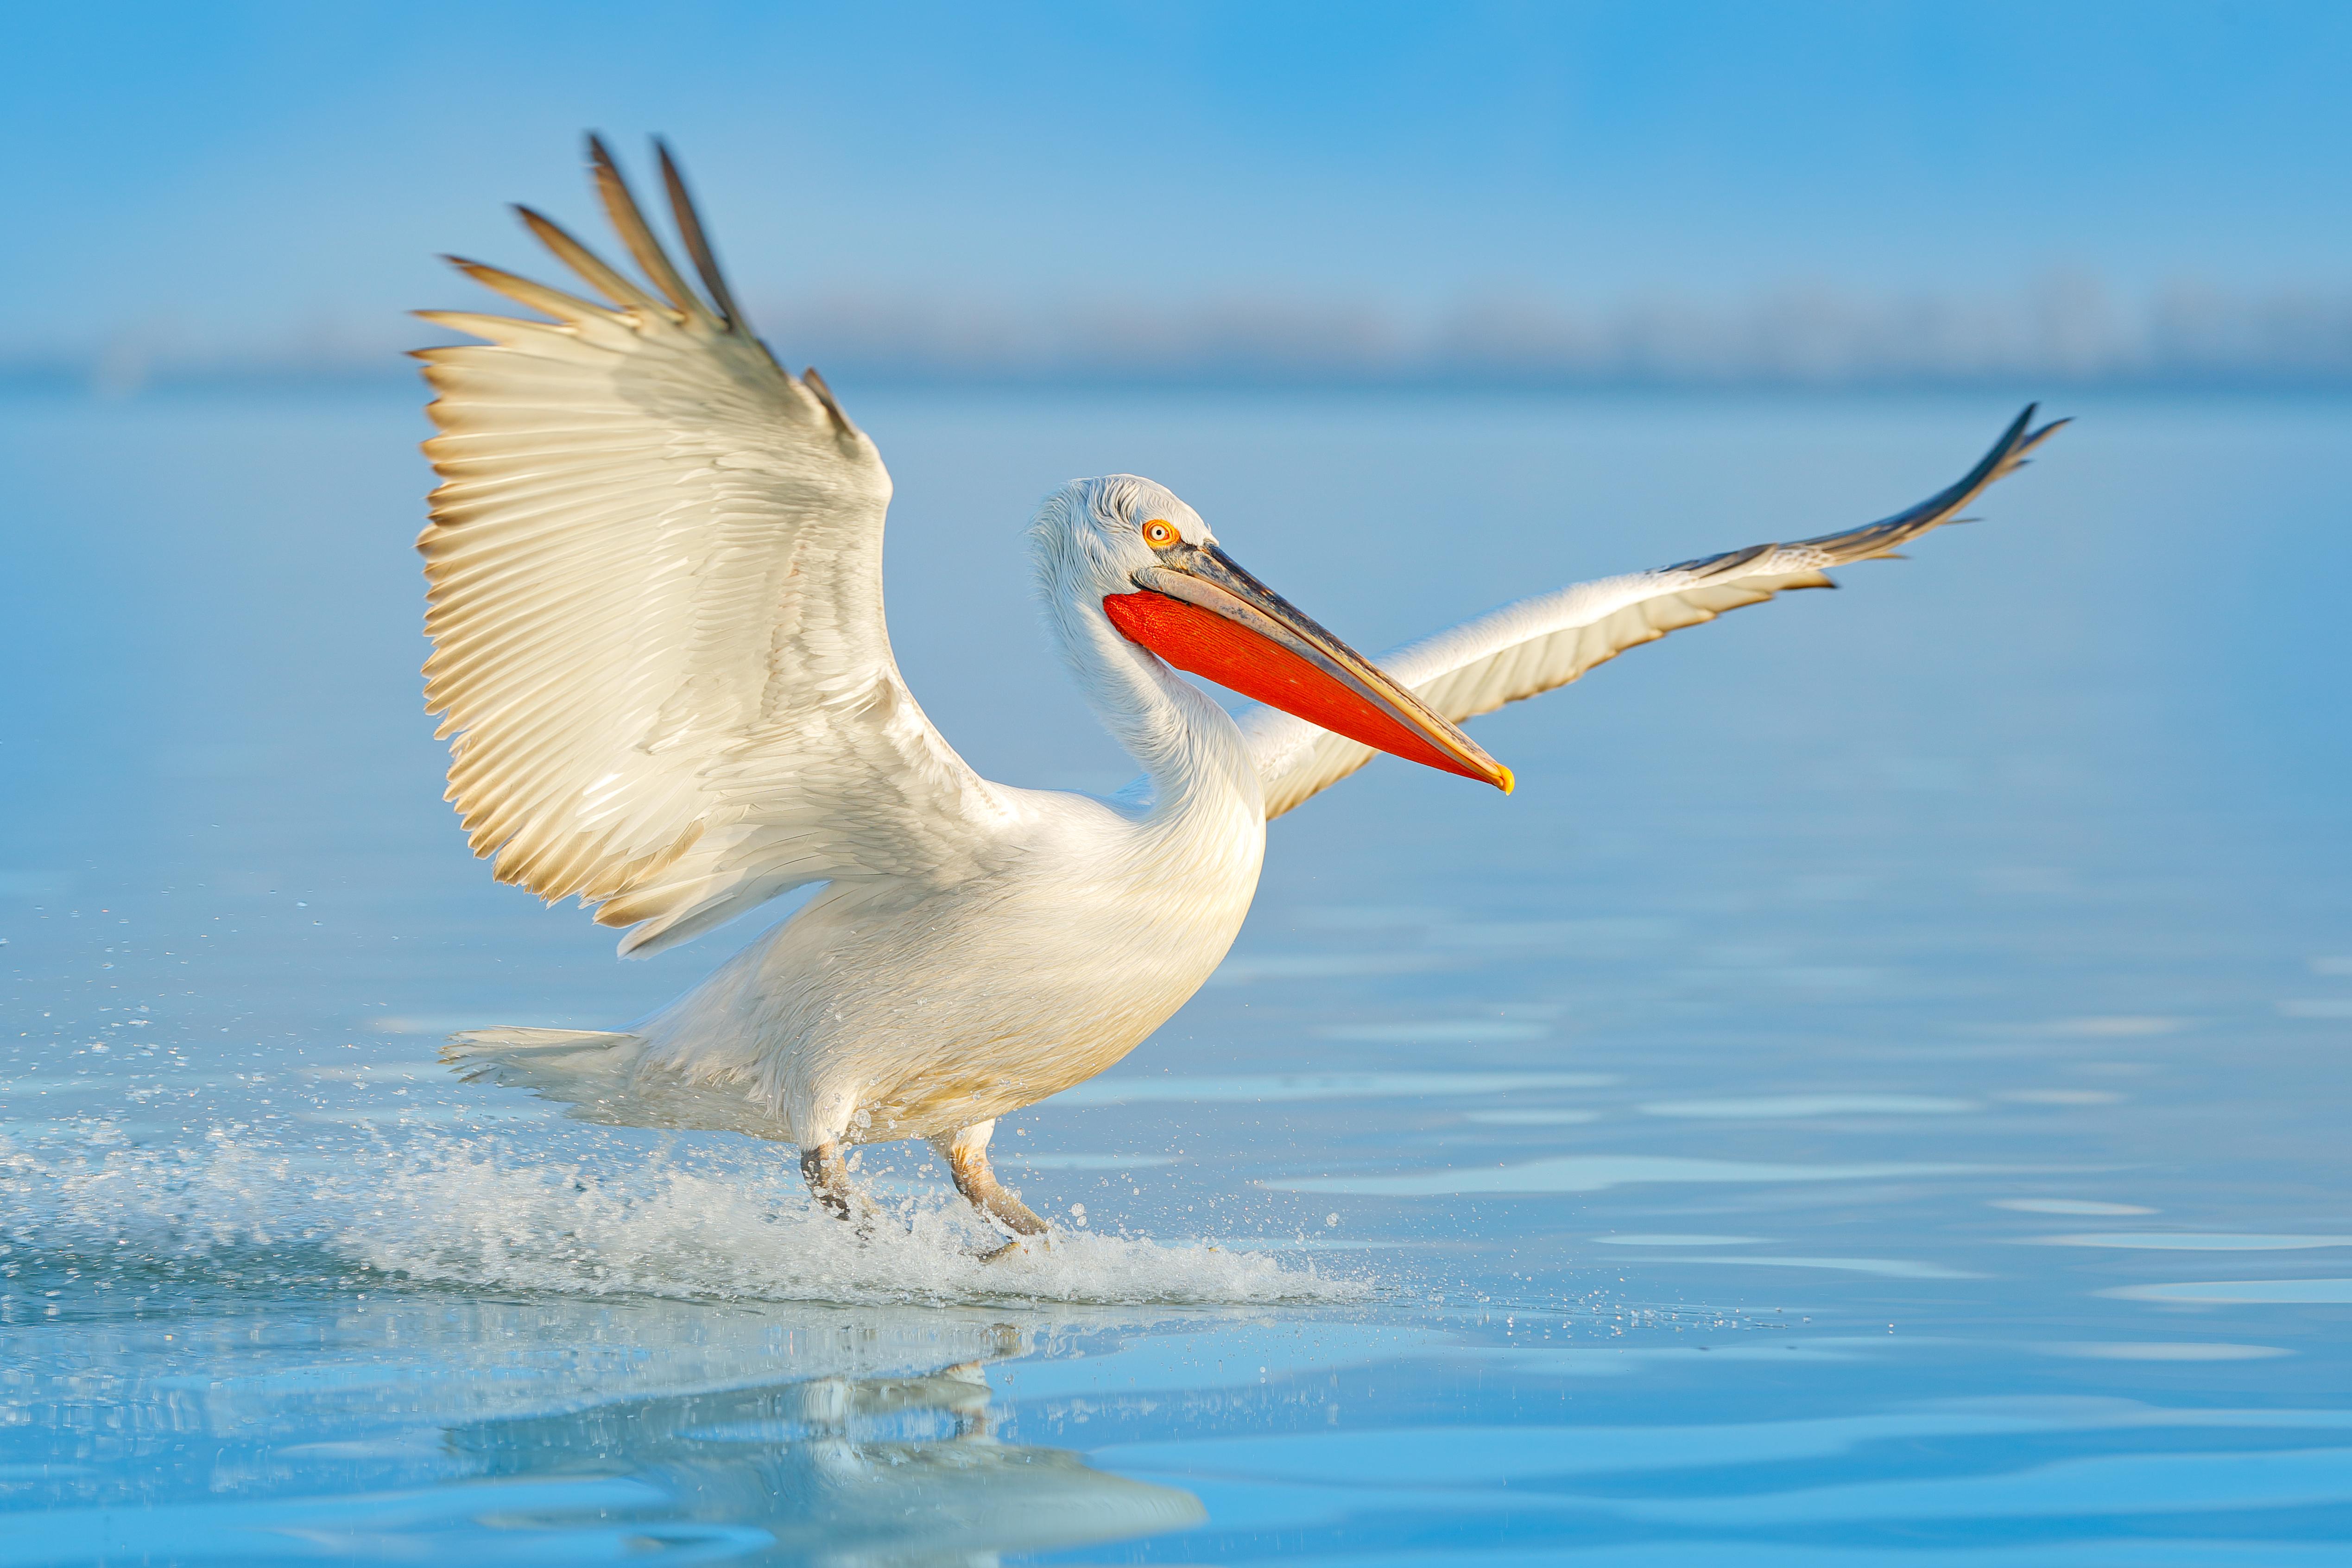 A Dalmatian pelican in flight